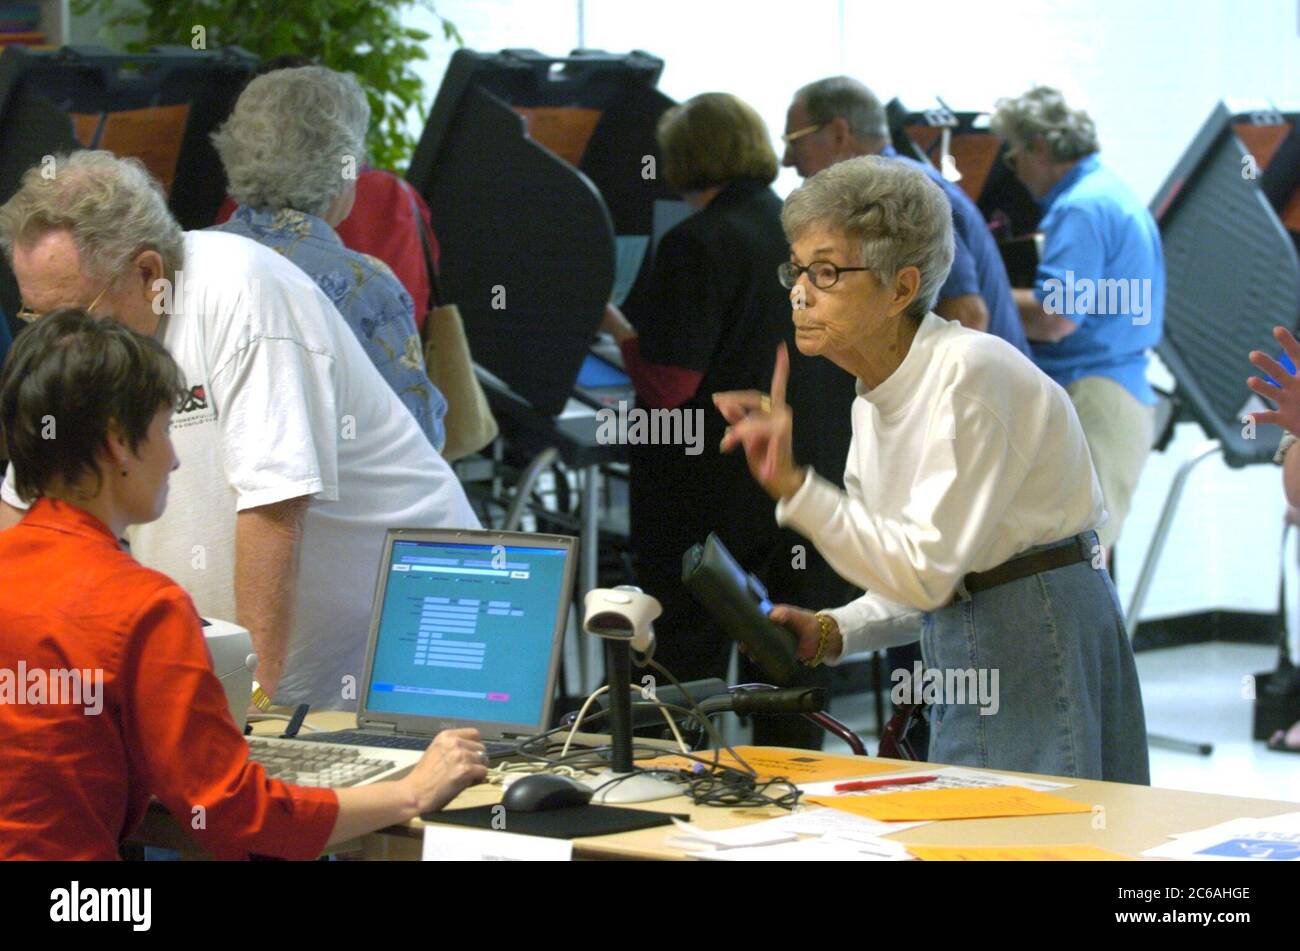 Austin, Texas, USA, Oktober 19 2004: Frühe Wähler im Rebekah Baines Johnson (RBJ) Retirement Center bereiten sich darauf vor, bei den Parlamentswahlen im November 2 Wahlurnen abzugeben. ©Bob Daemmrich Stockfoto